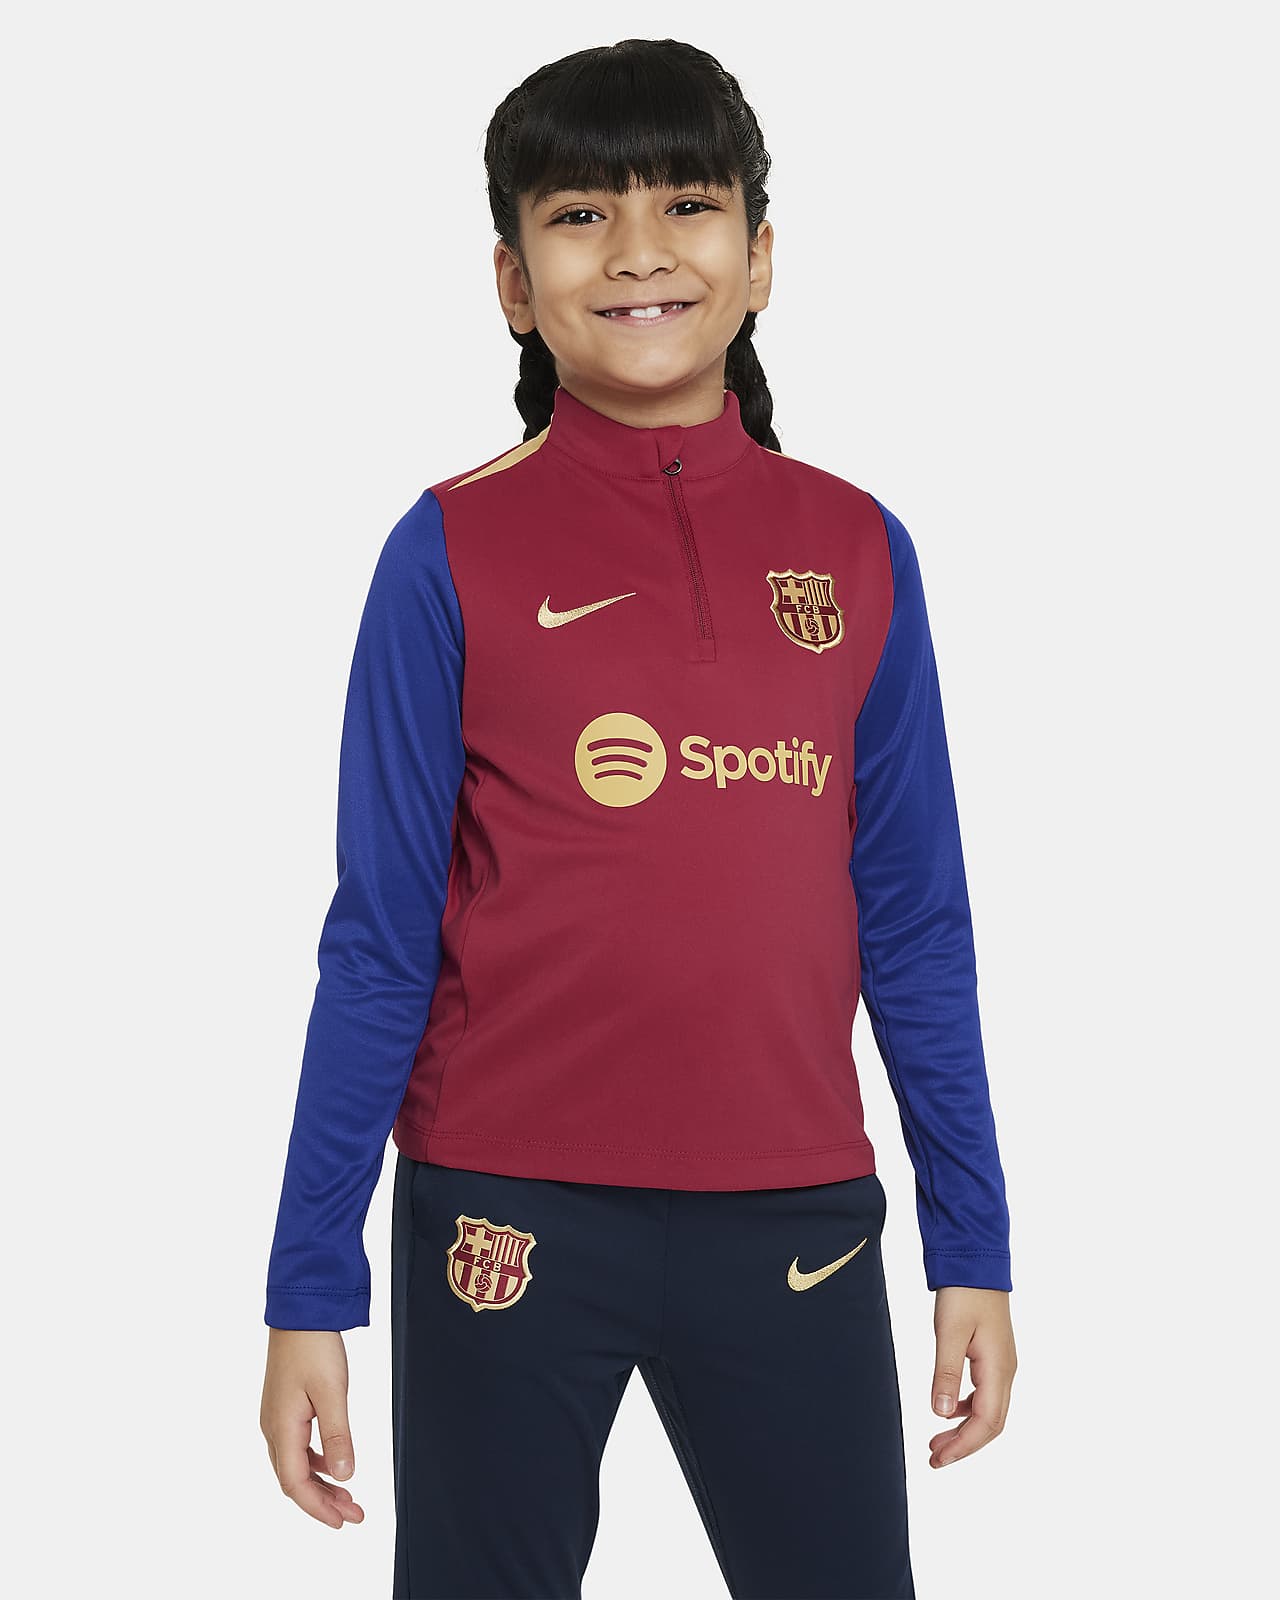 Fotbalový tréninkový top Nike Dri-FIT FC Barcelona Academy Pro pro malé děti